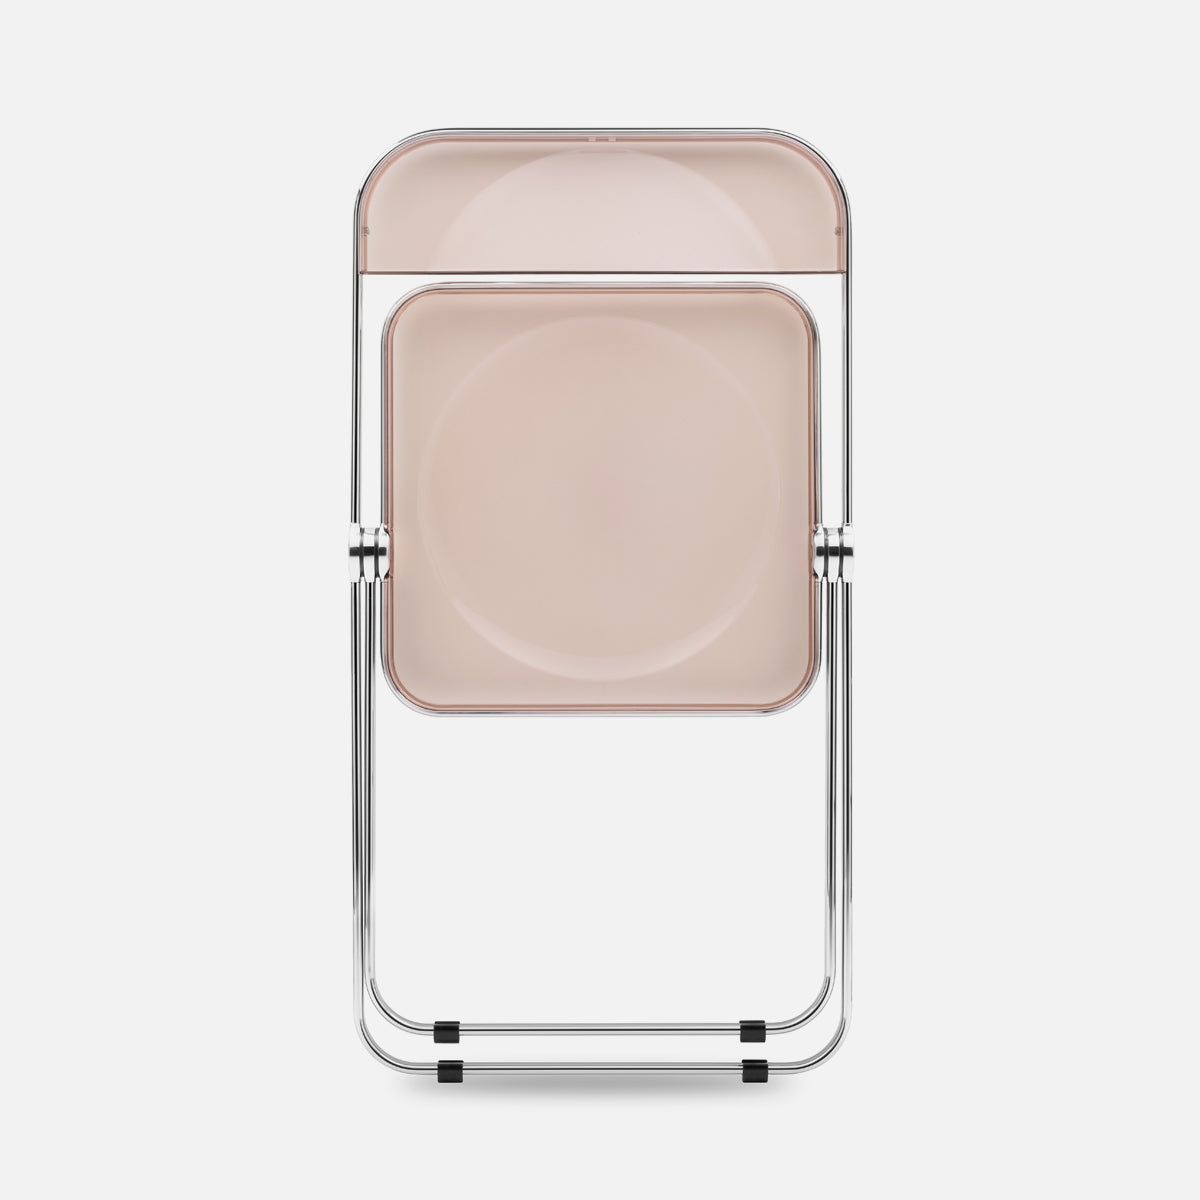 Anonima Castelli Plia Chair Chrome Smoke Pink